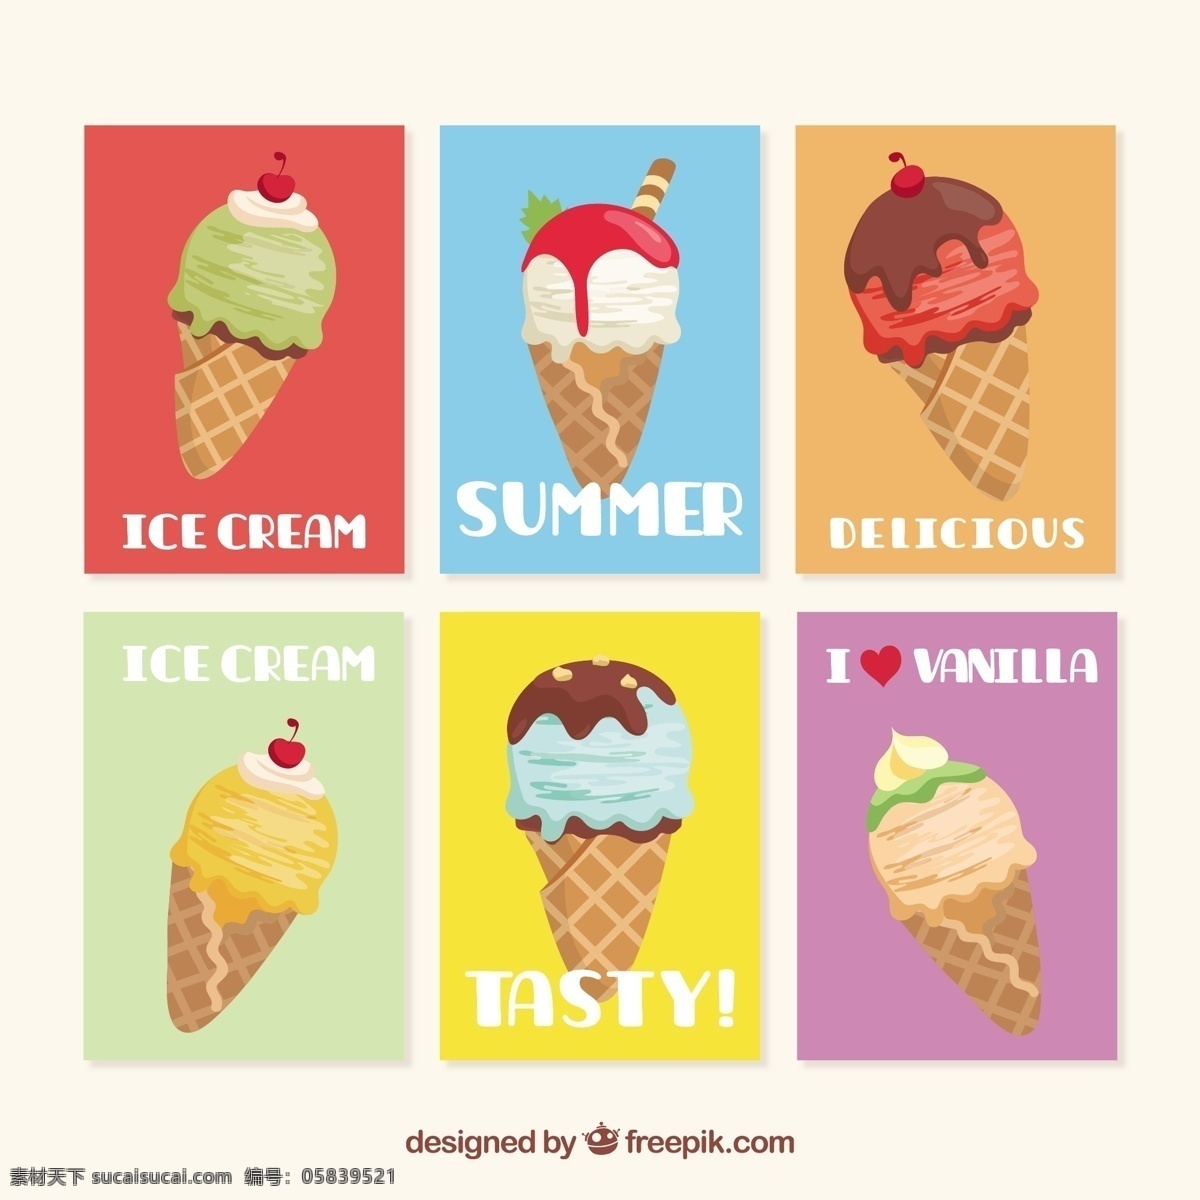 椎体 冰淇淋 插图 矢量 矢量素材 甜品图标 冷饮插图 清凉甜品 冰淇淋标志 卡通图标 雪糕图标 网页图标 冰激凌图标 冰激凌插图